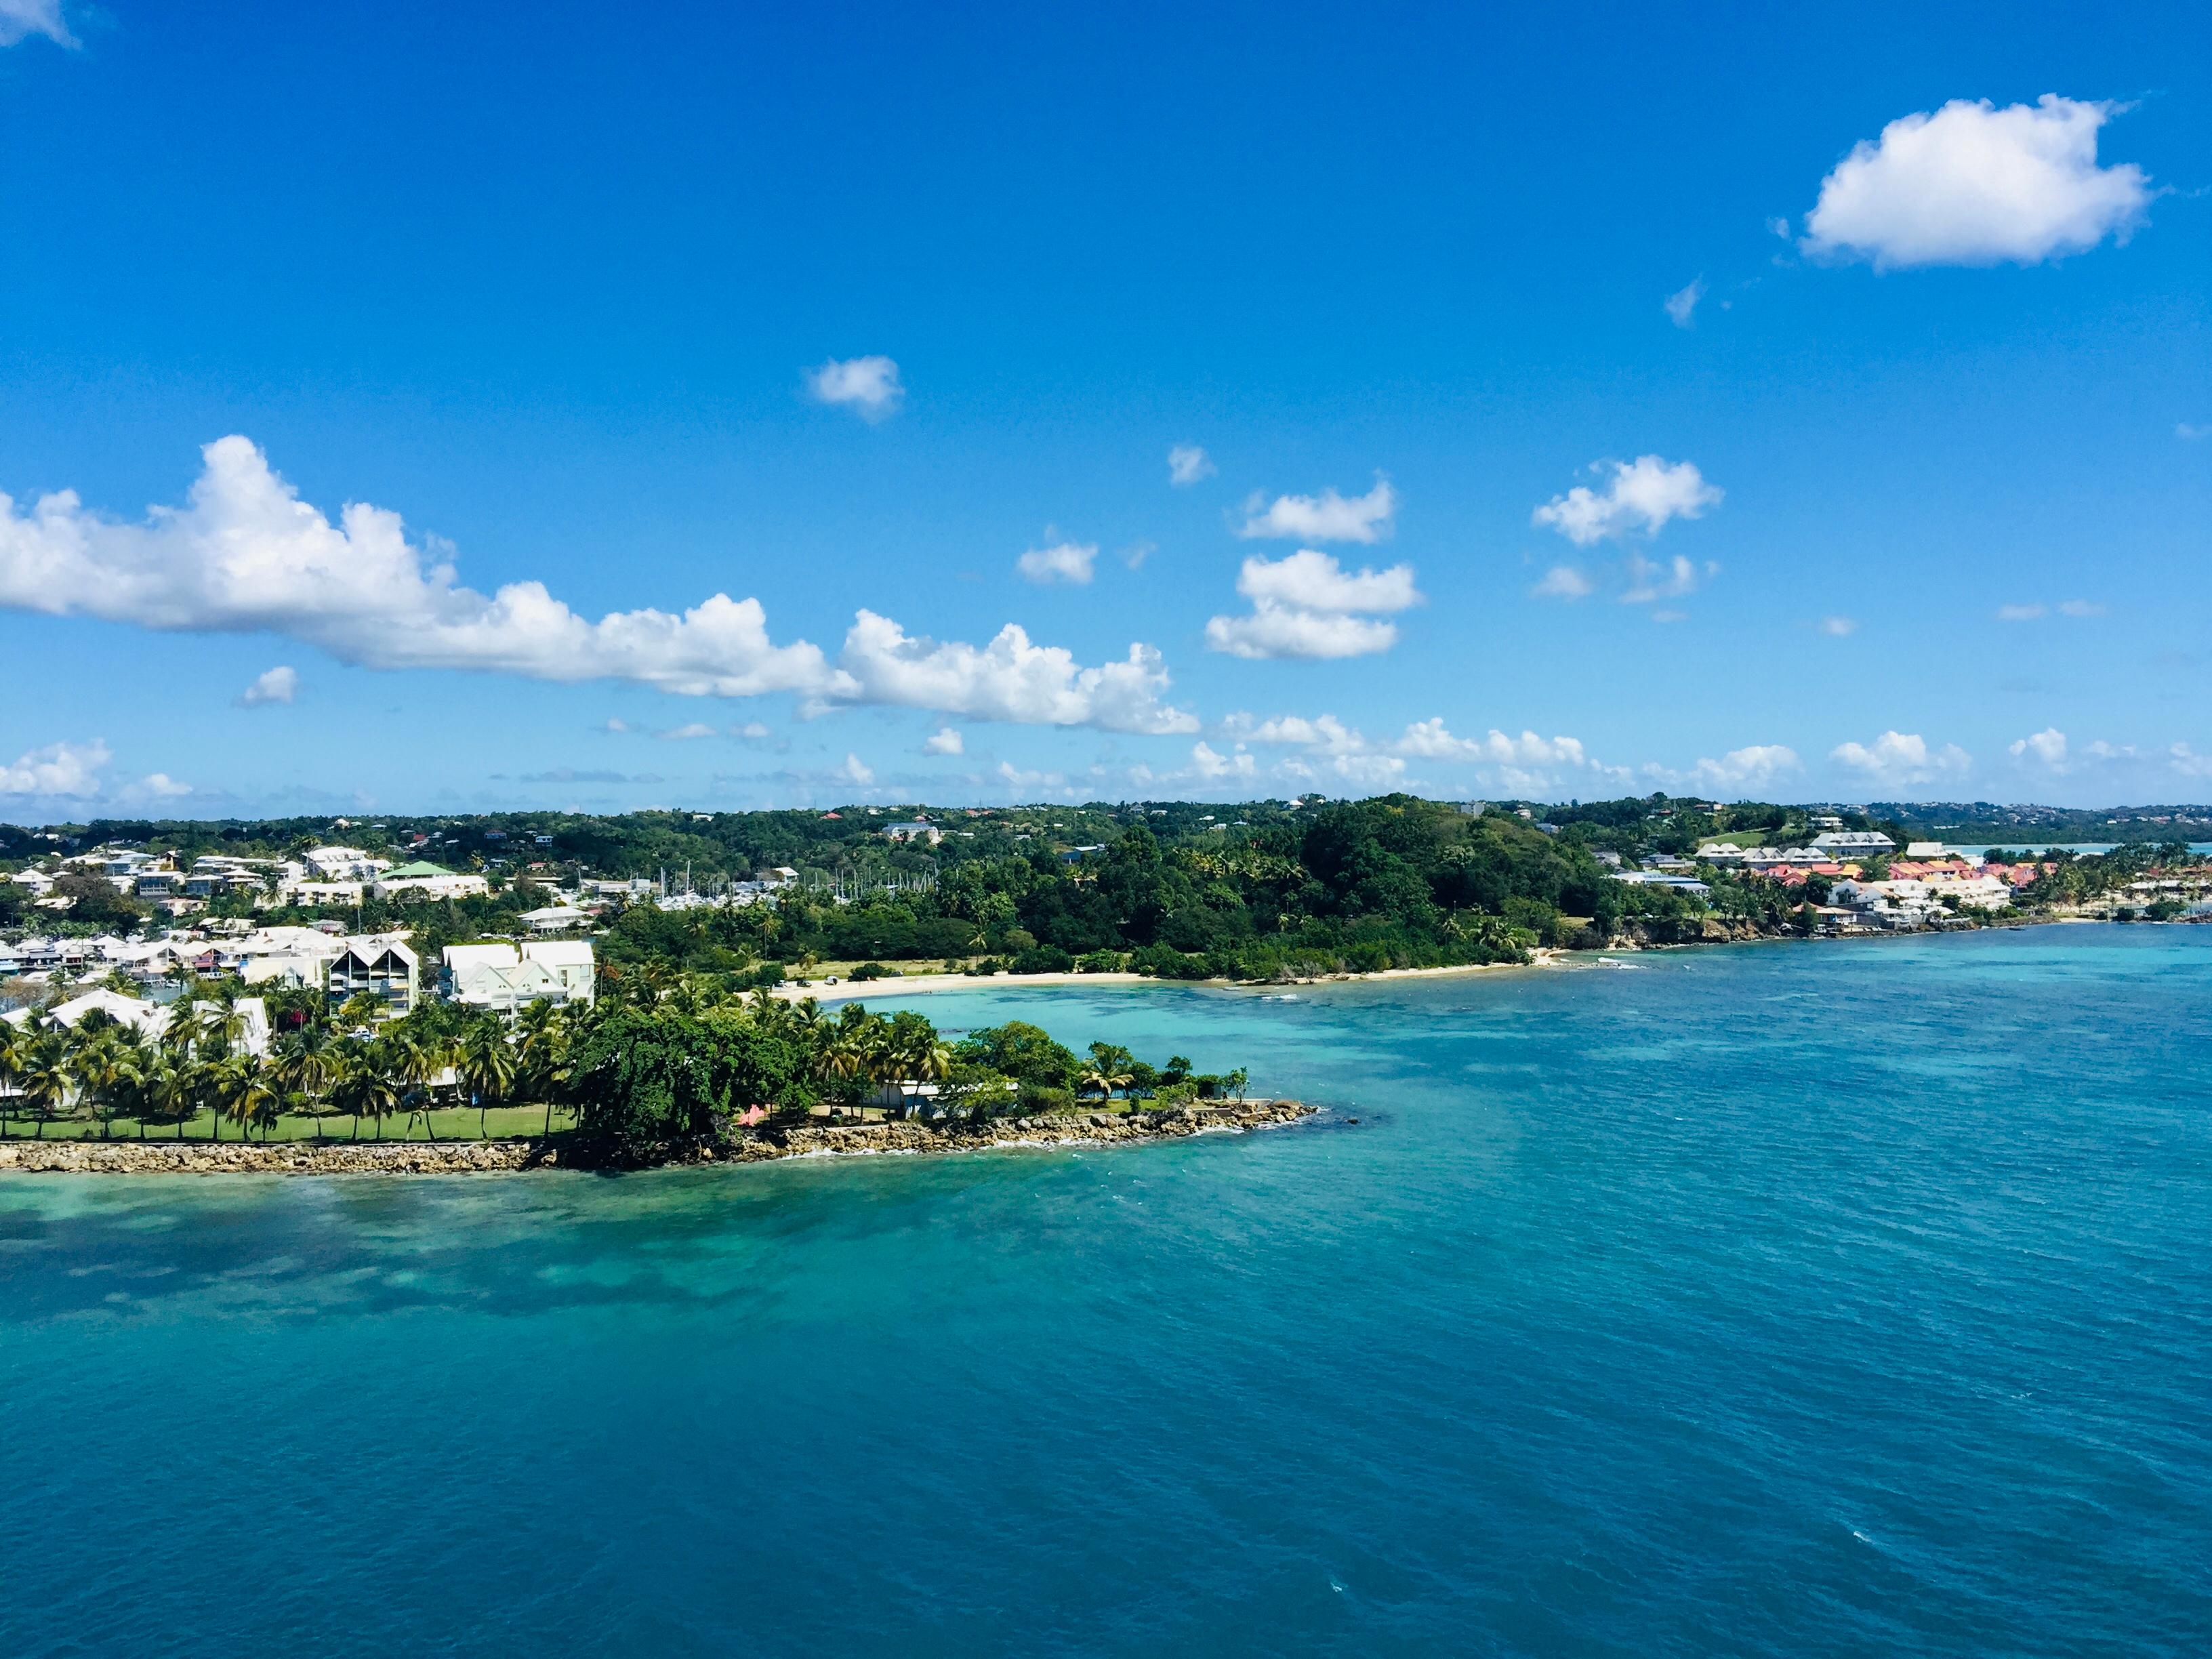 Landzungen an der Küste der Karibik mit Palmen, weißen Hausern in himmlisch blauem Meer